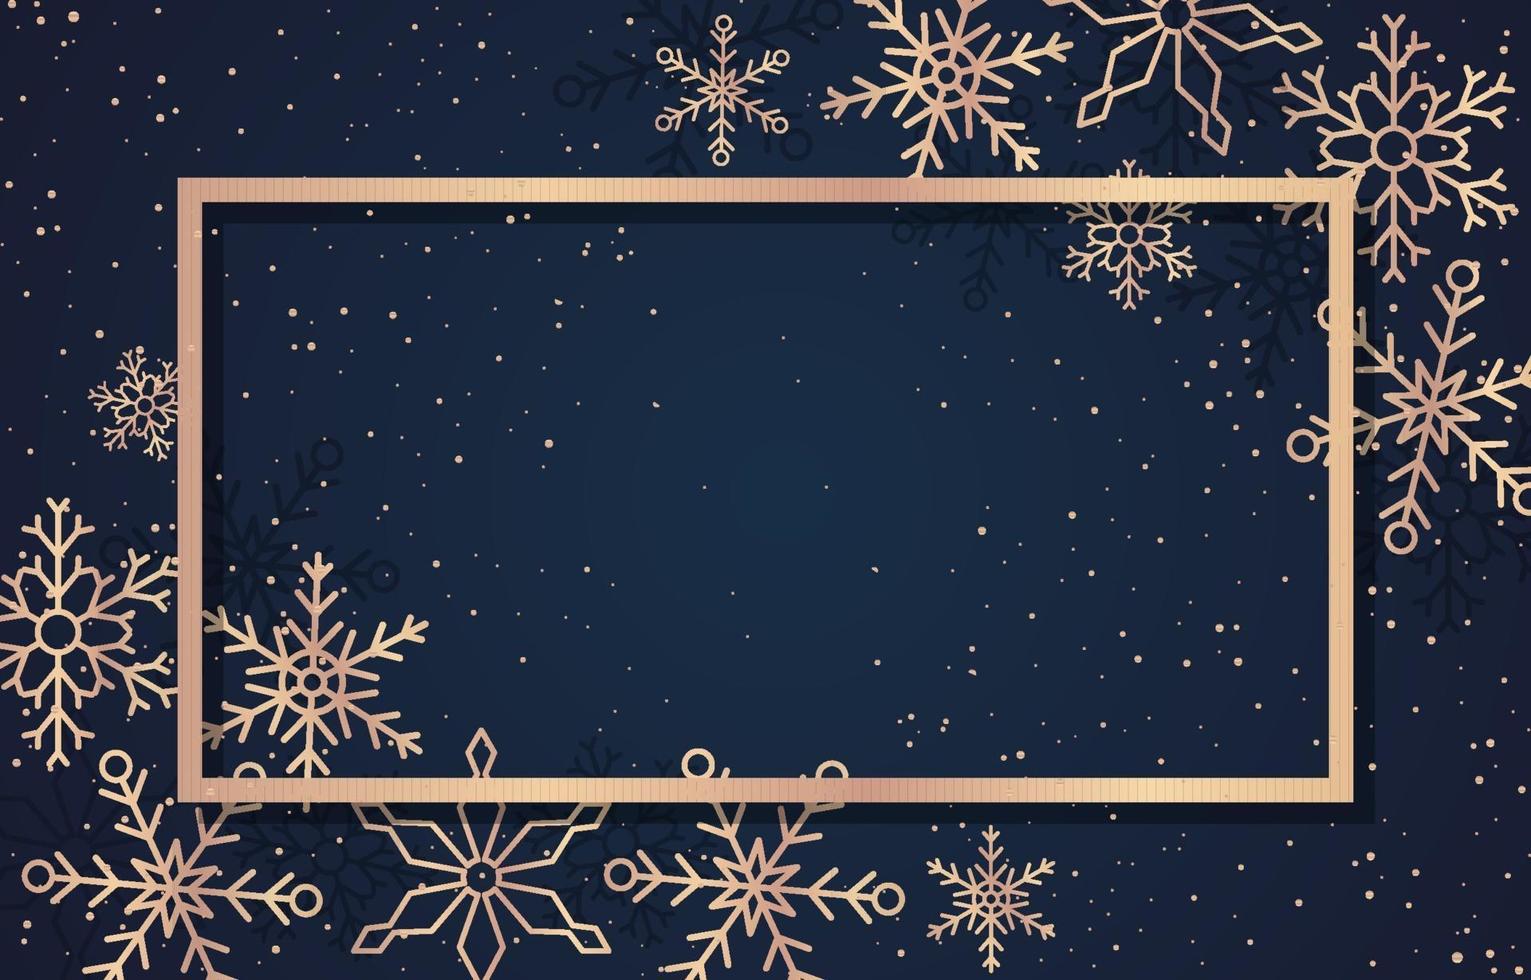 modelo de cartão de felicitações para a temporada de inverno com moldura dourada e flocos de neve vetor